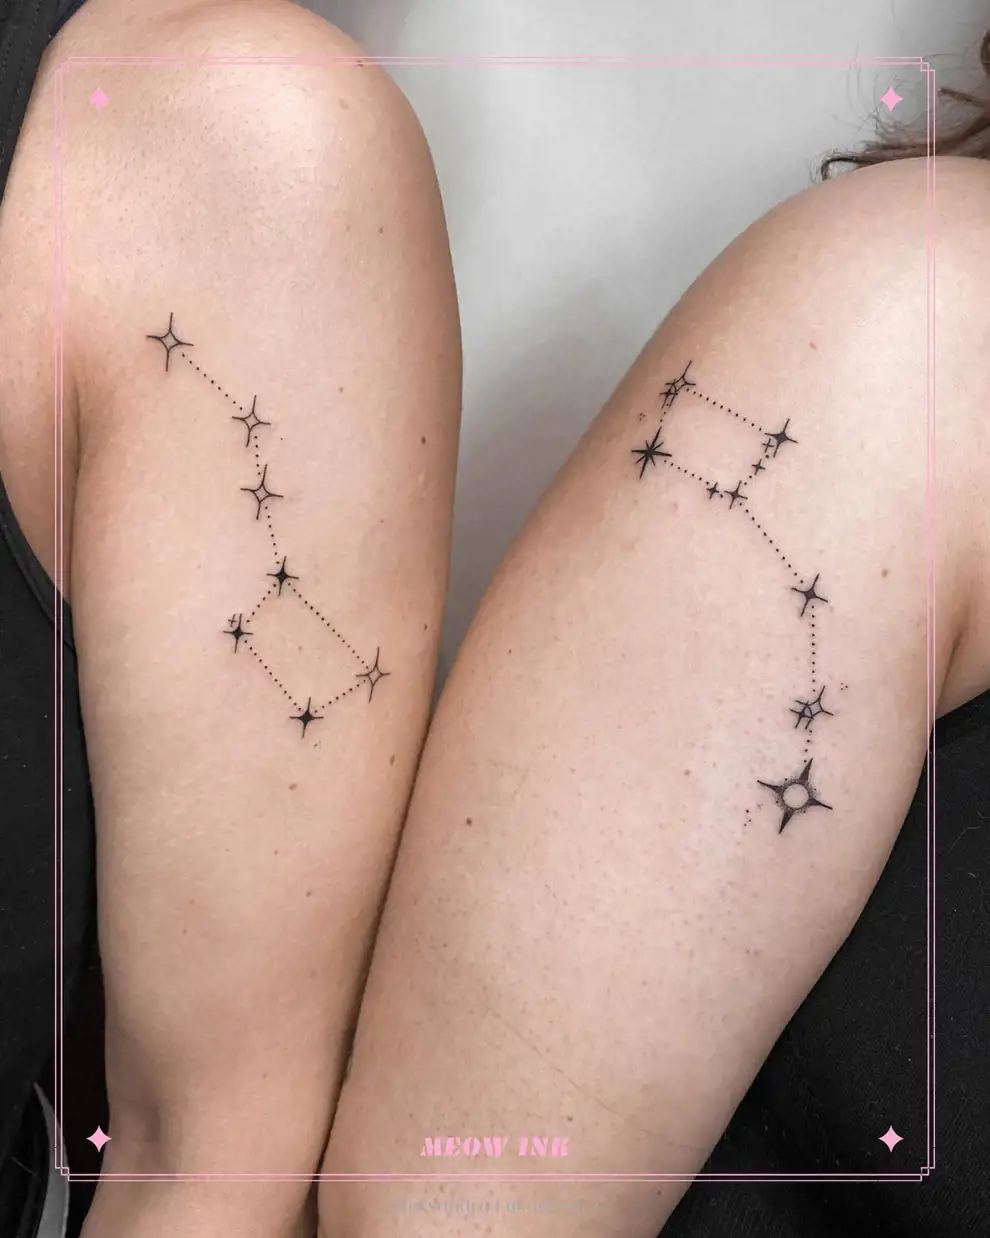 Tatuajes madre e hija originales: constelaciones